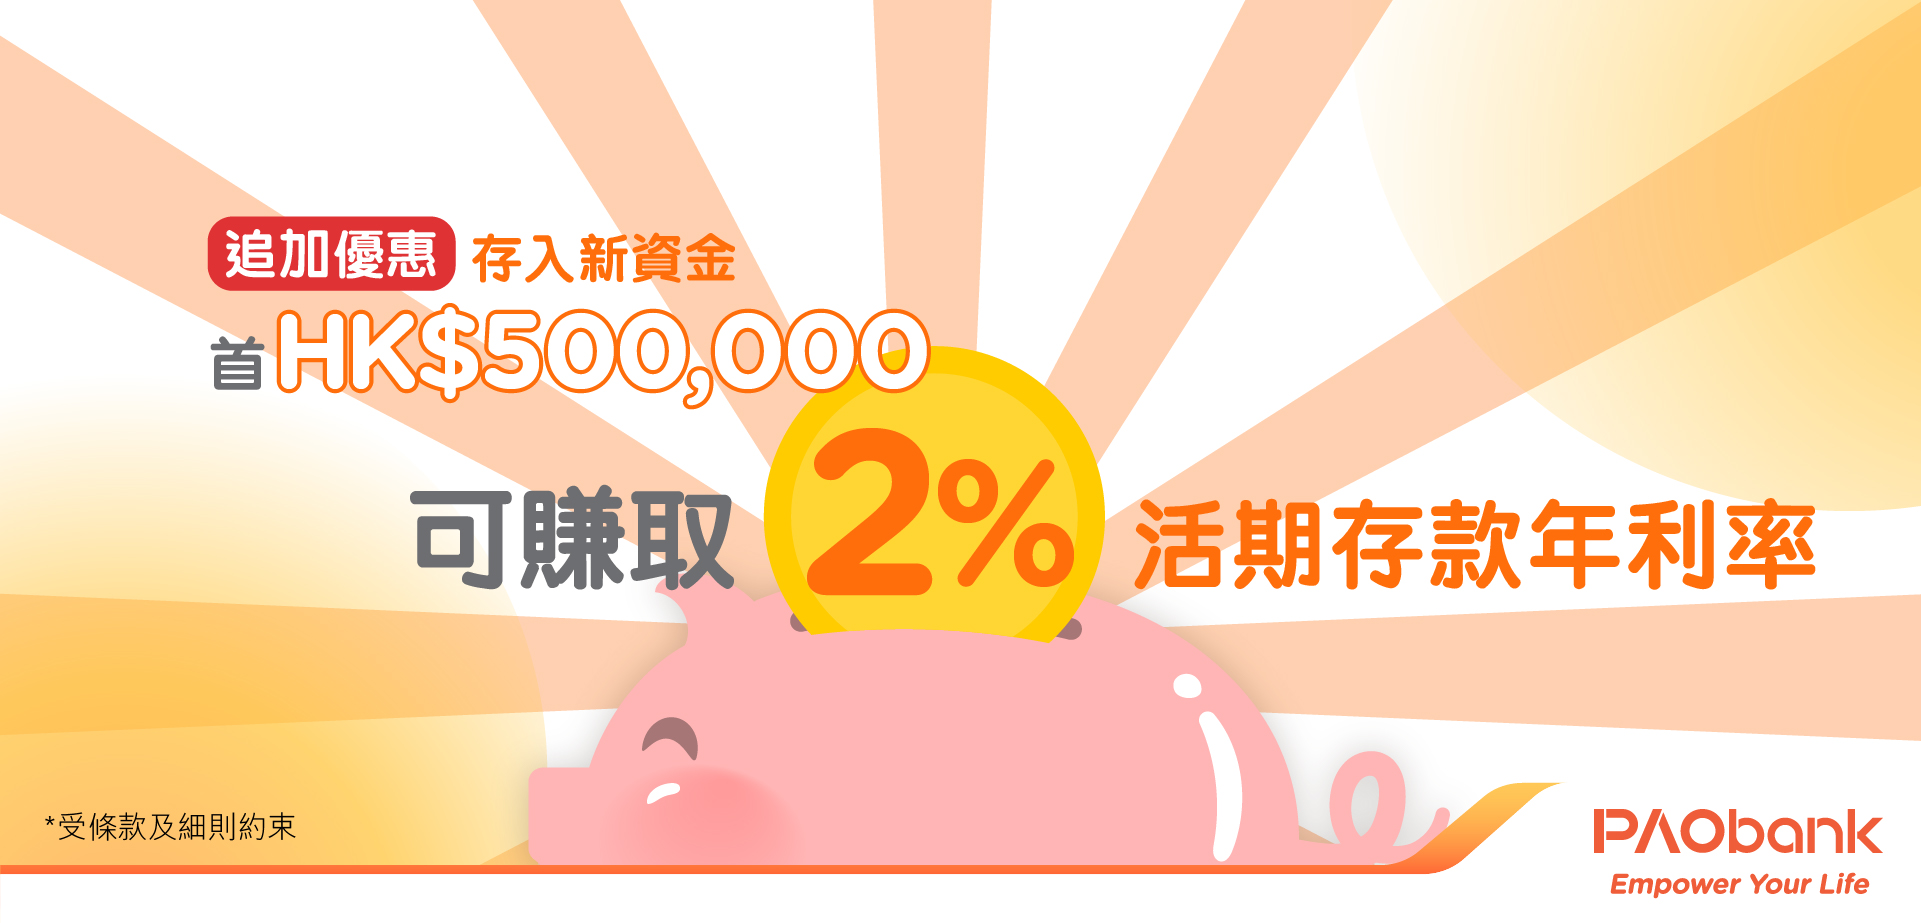 平安壹賬通銀行(PAOB) - 新資金2%存款年利率